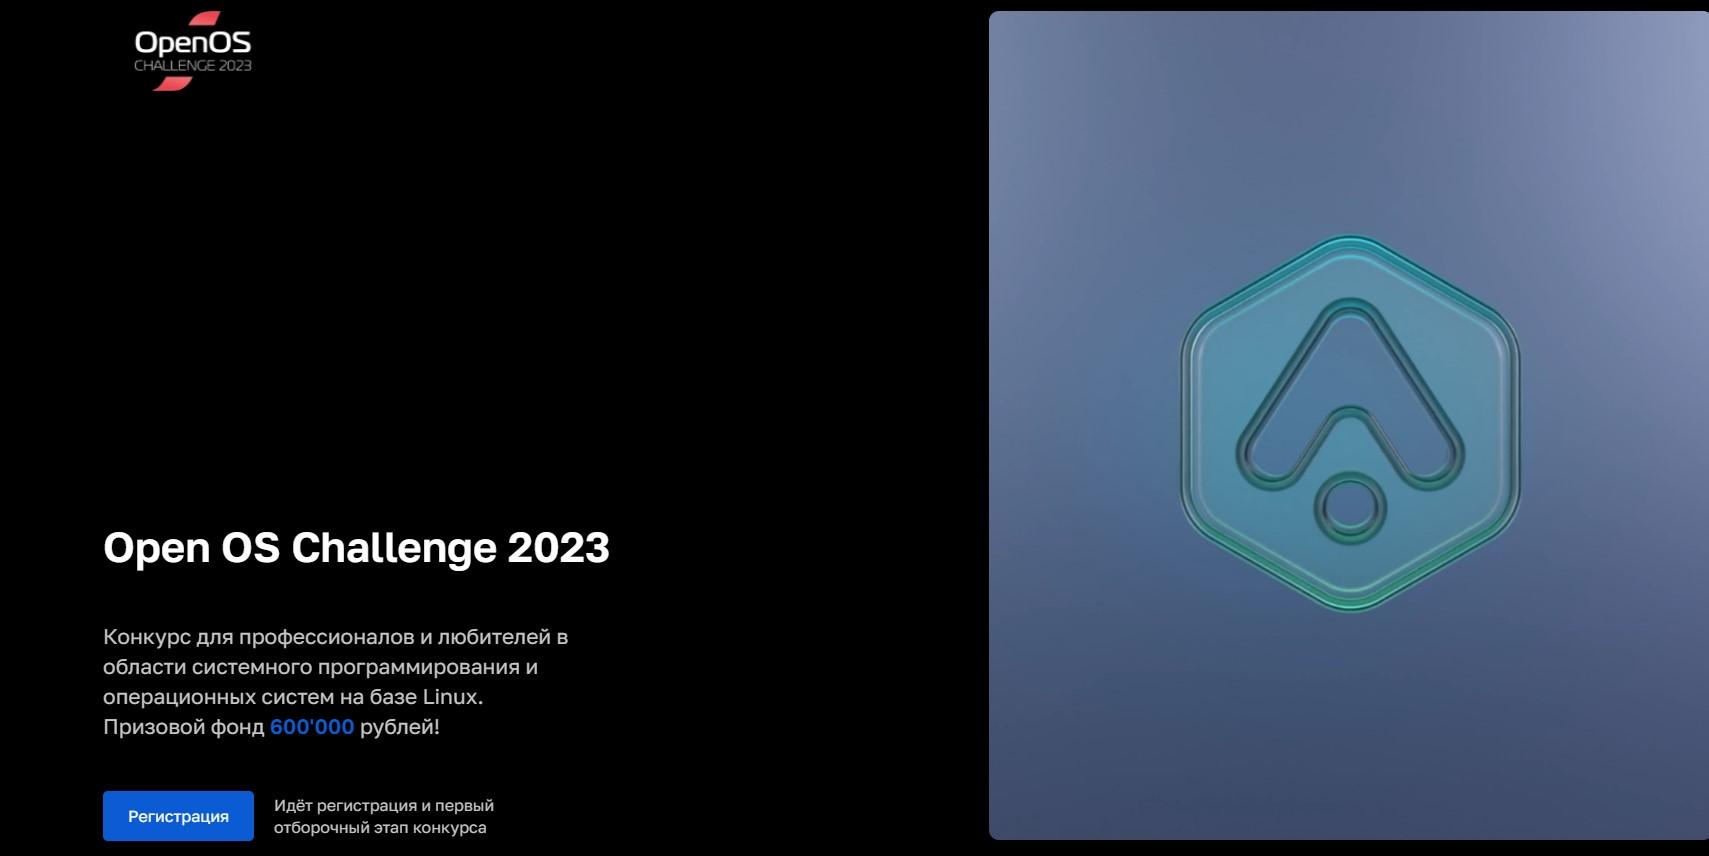 СберТех и ИТ-Планета проводят первый Open OS Challenge 2023 для профессионалов в области системного программирования